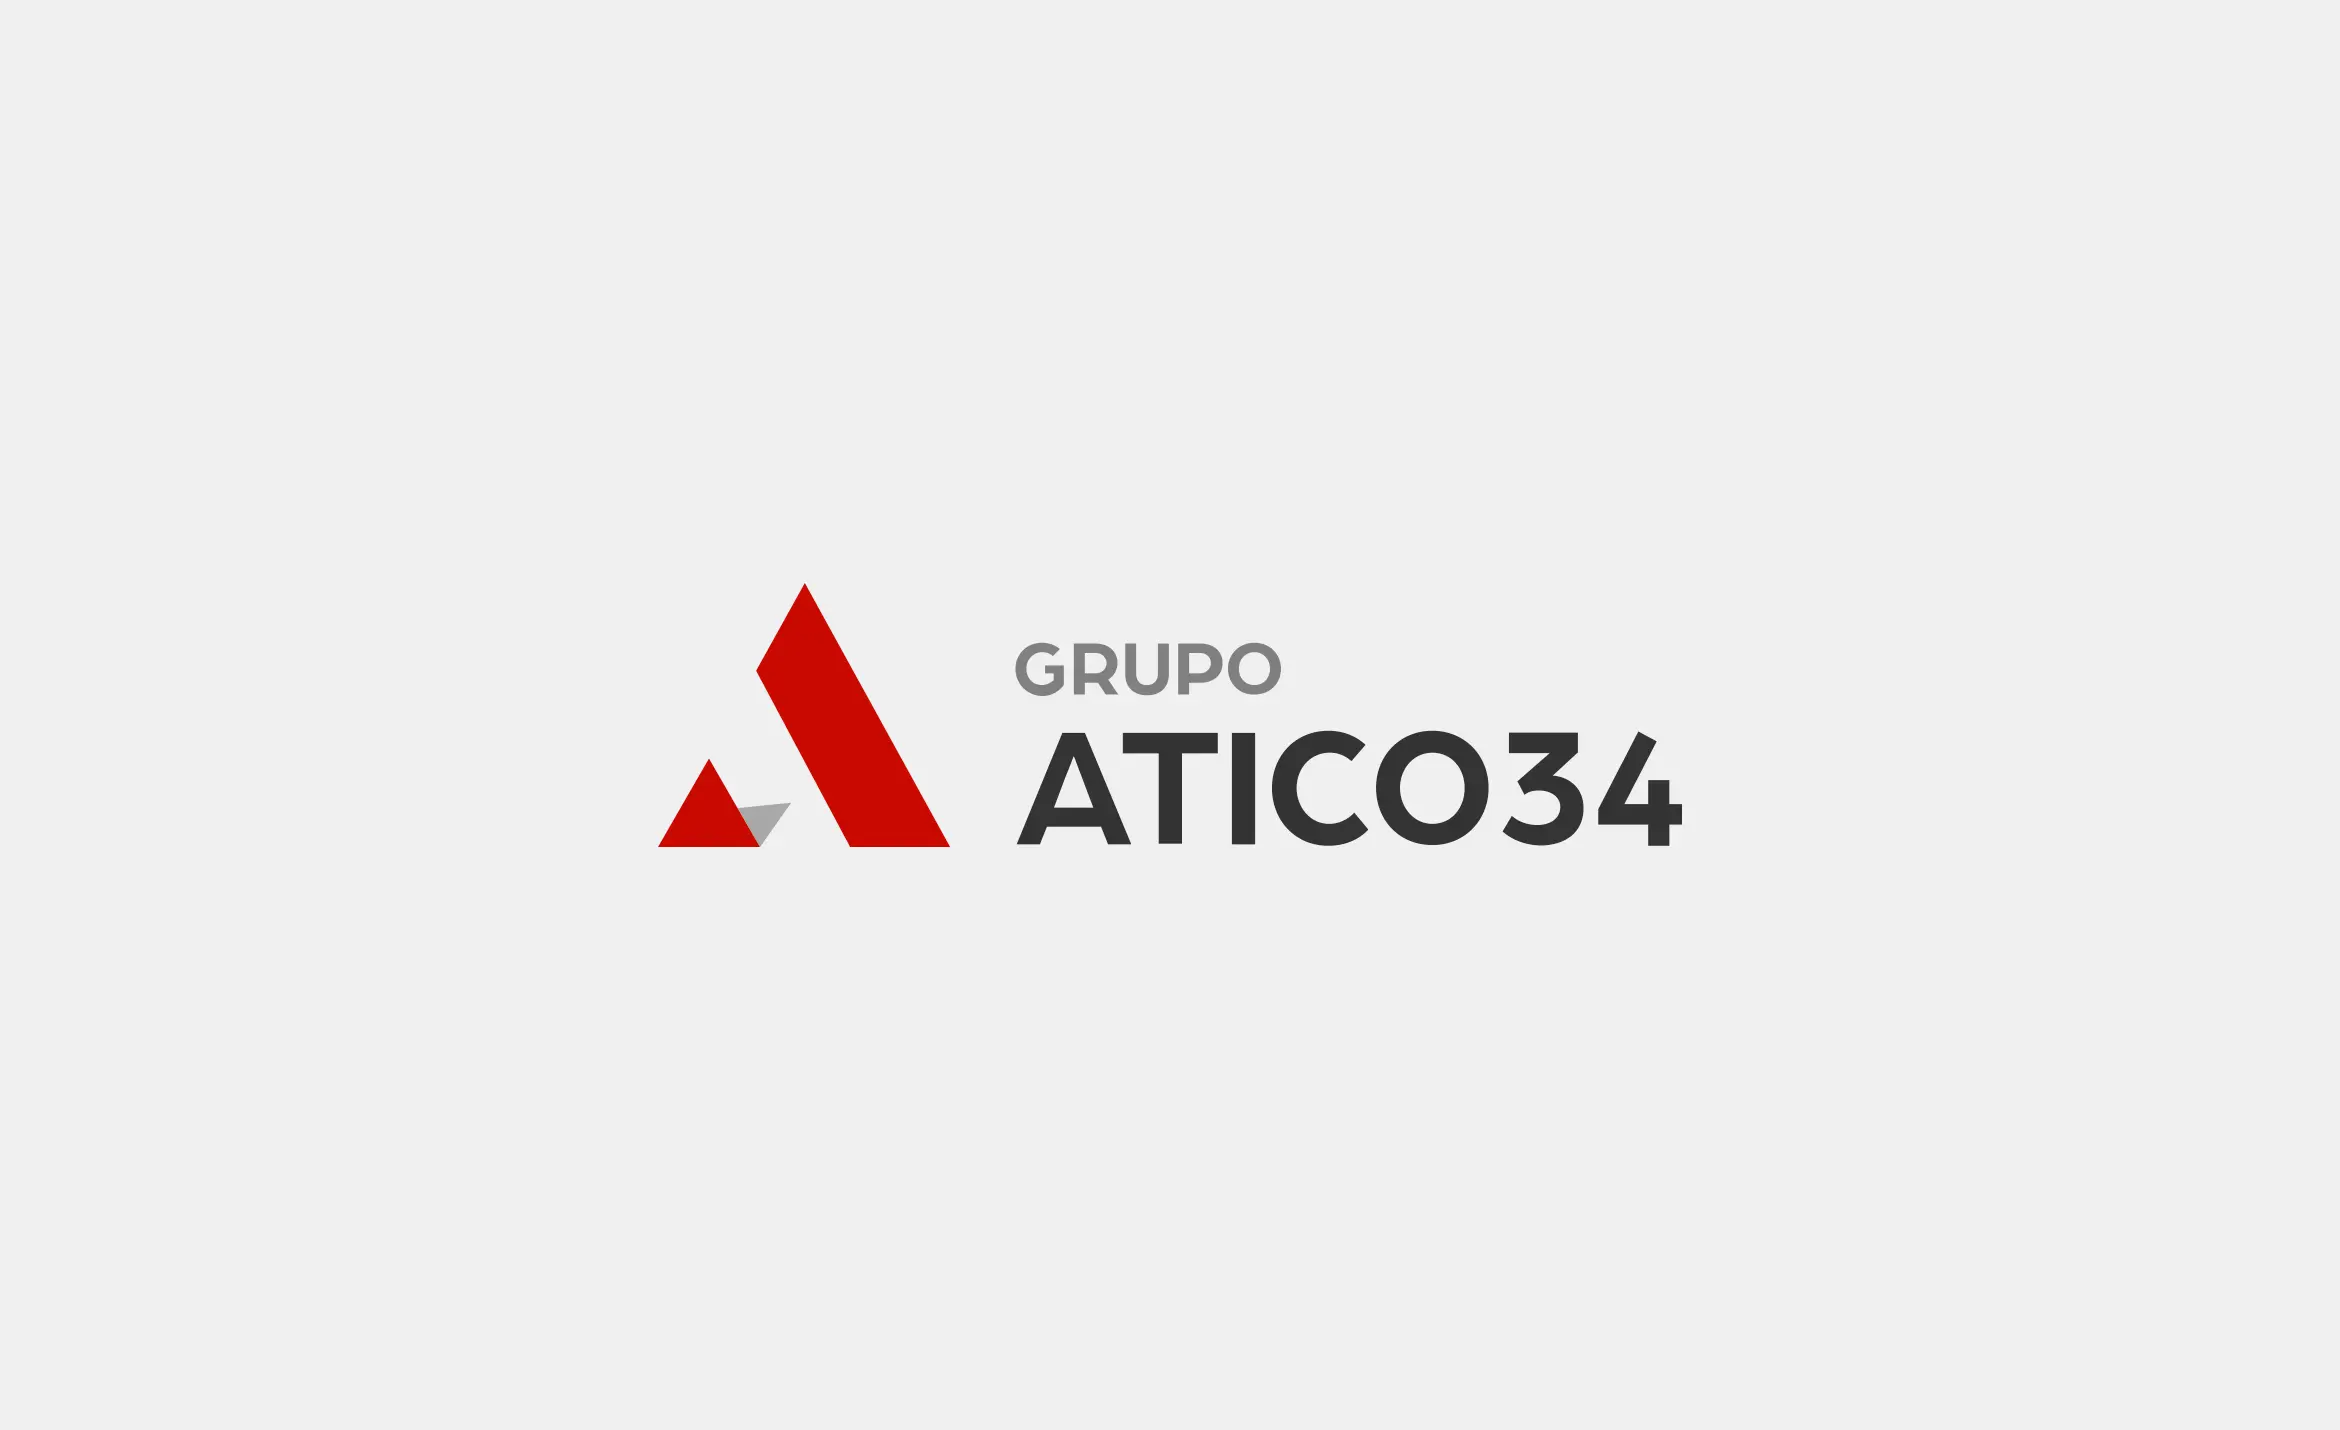 Grupo Atico34 logo